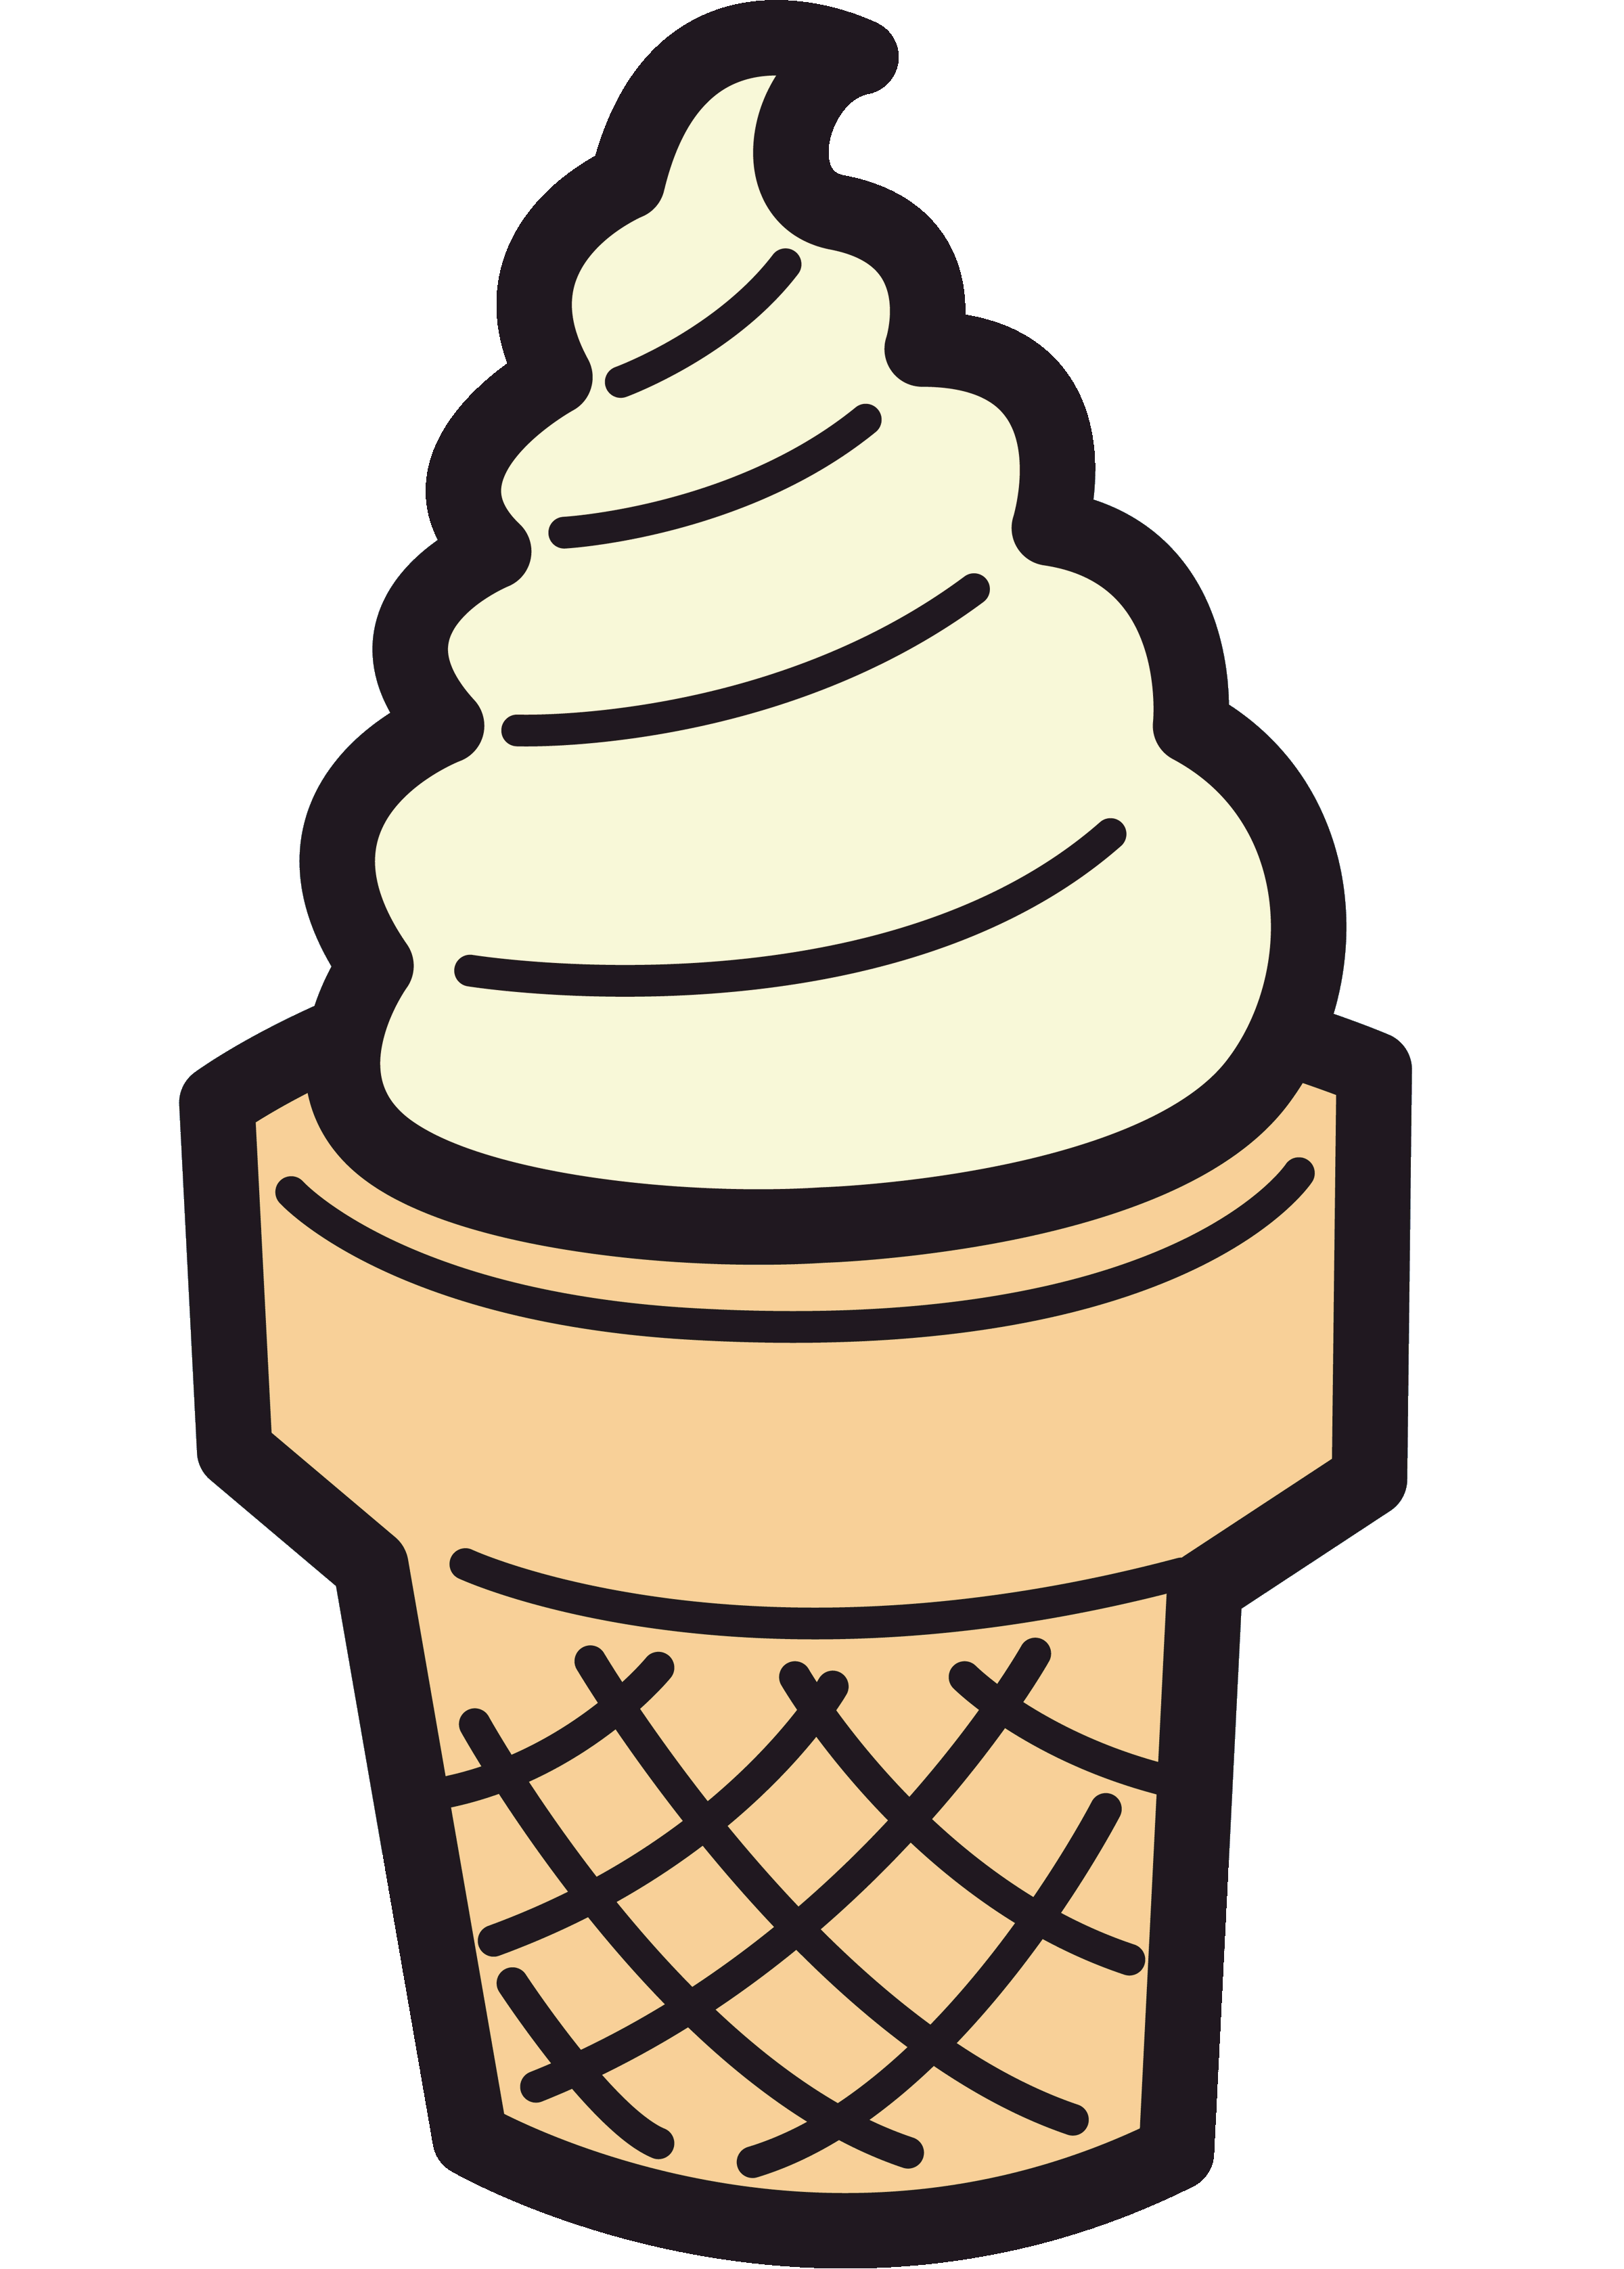 ice cream cone clipart - Ice Cream Cone Clip Art